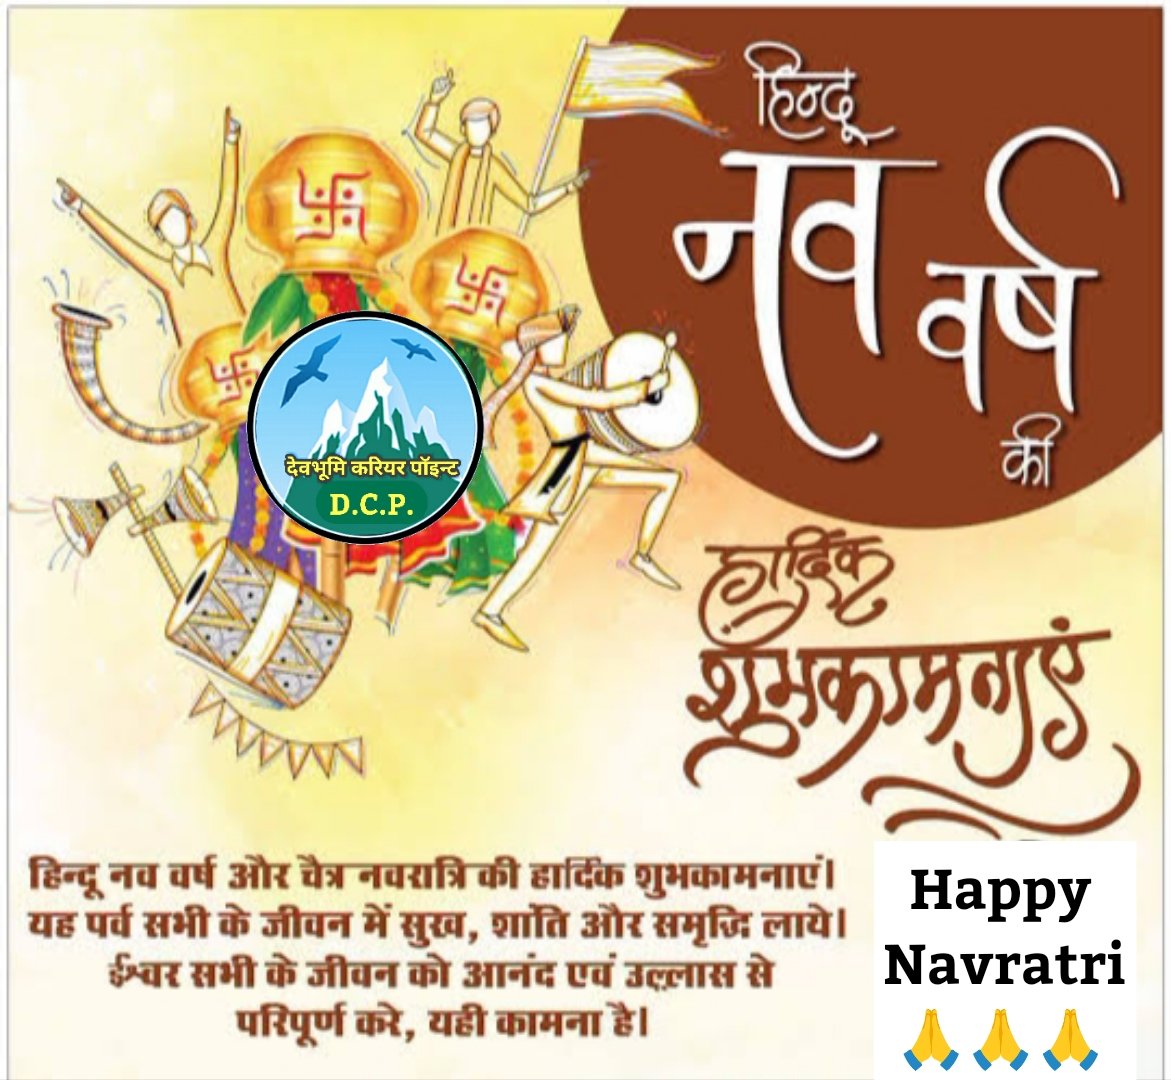 हिंदू नव वर्ष और चैत्र नवरात्रि की हार्दिक शुभकामनाएं 🙏🙏🙏